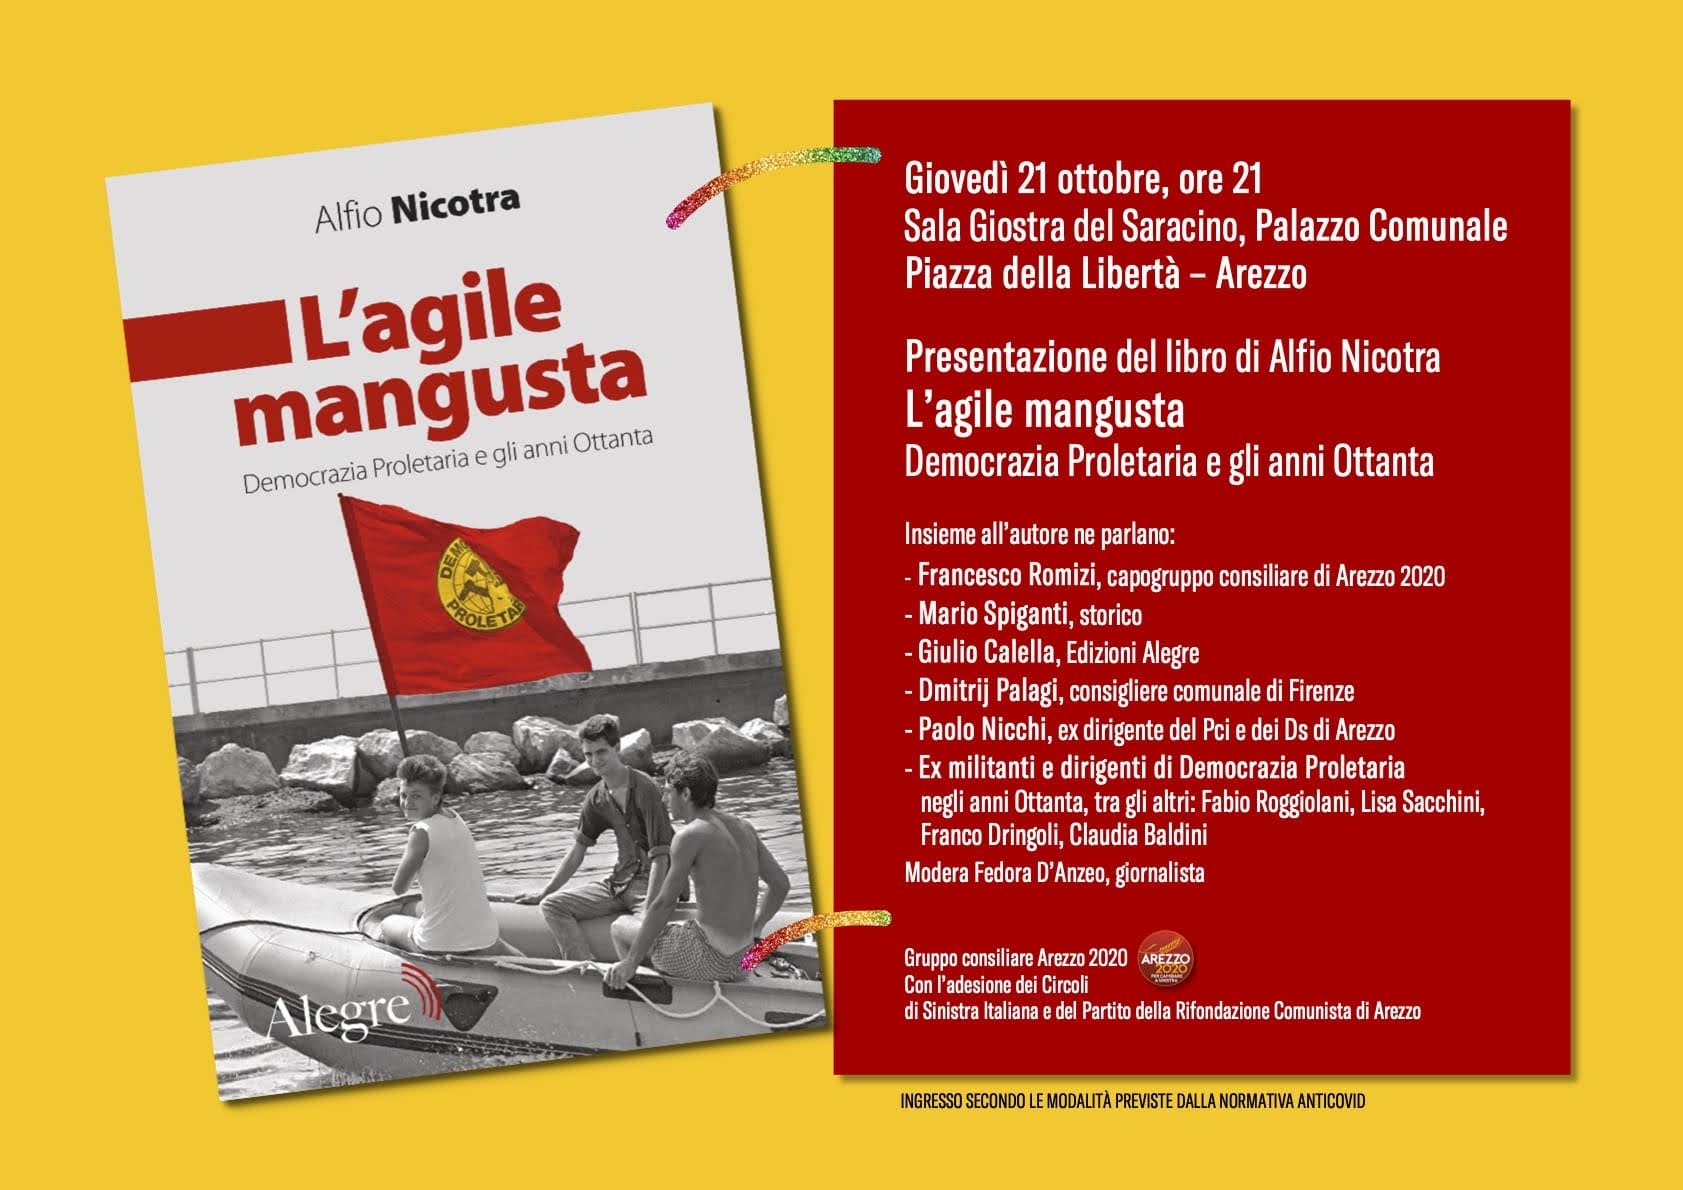 “L’agile mangusta” di Alfio Nicotra: la presentazione del libro a palazzo comunale